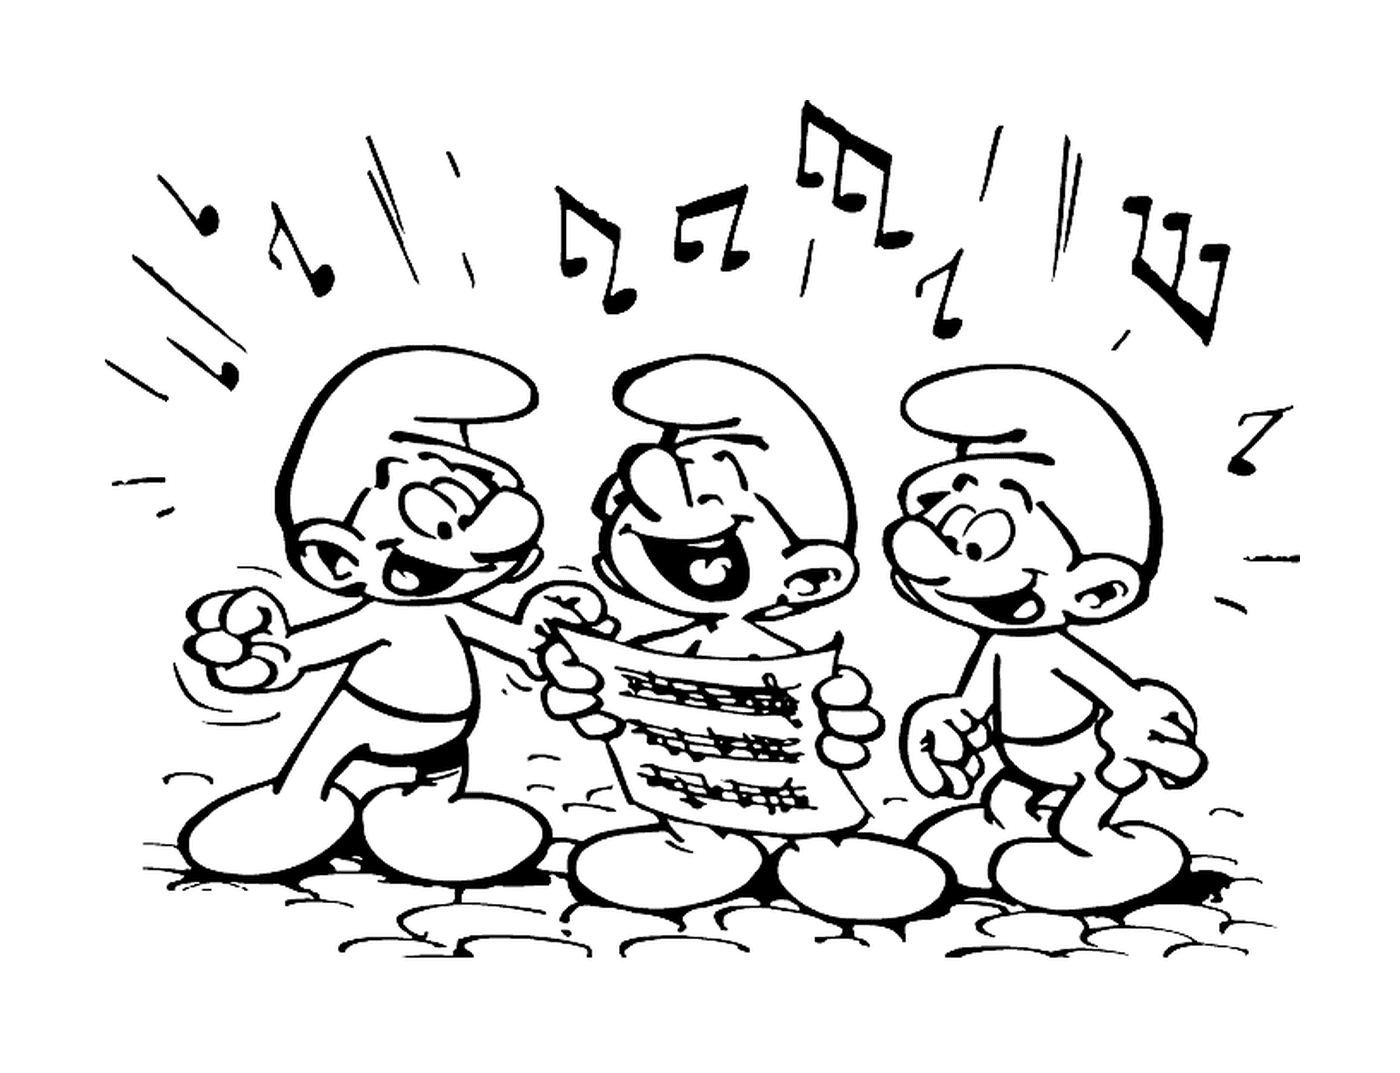   Trois smurfettes chantent harmonieusement 